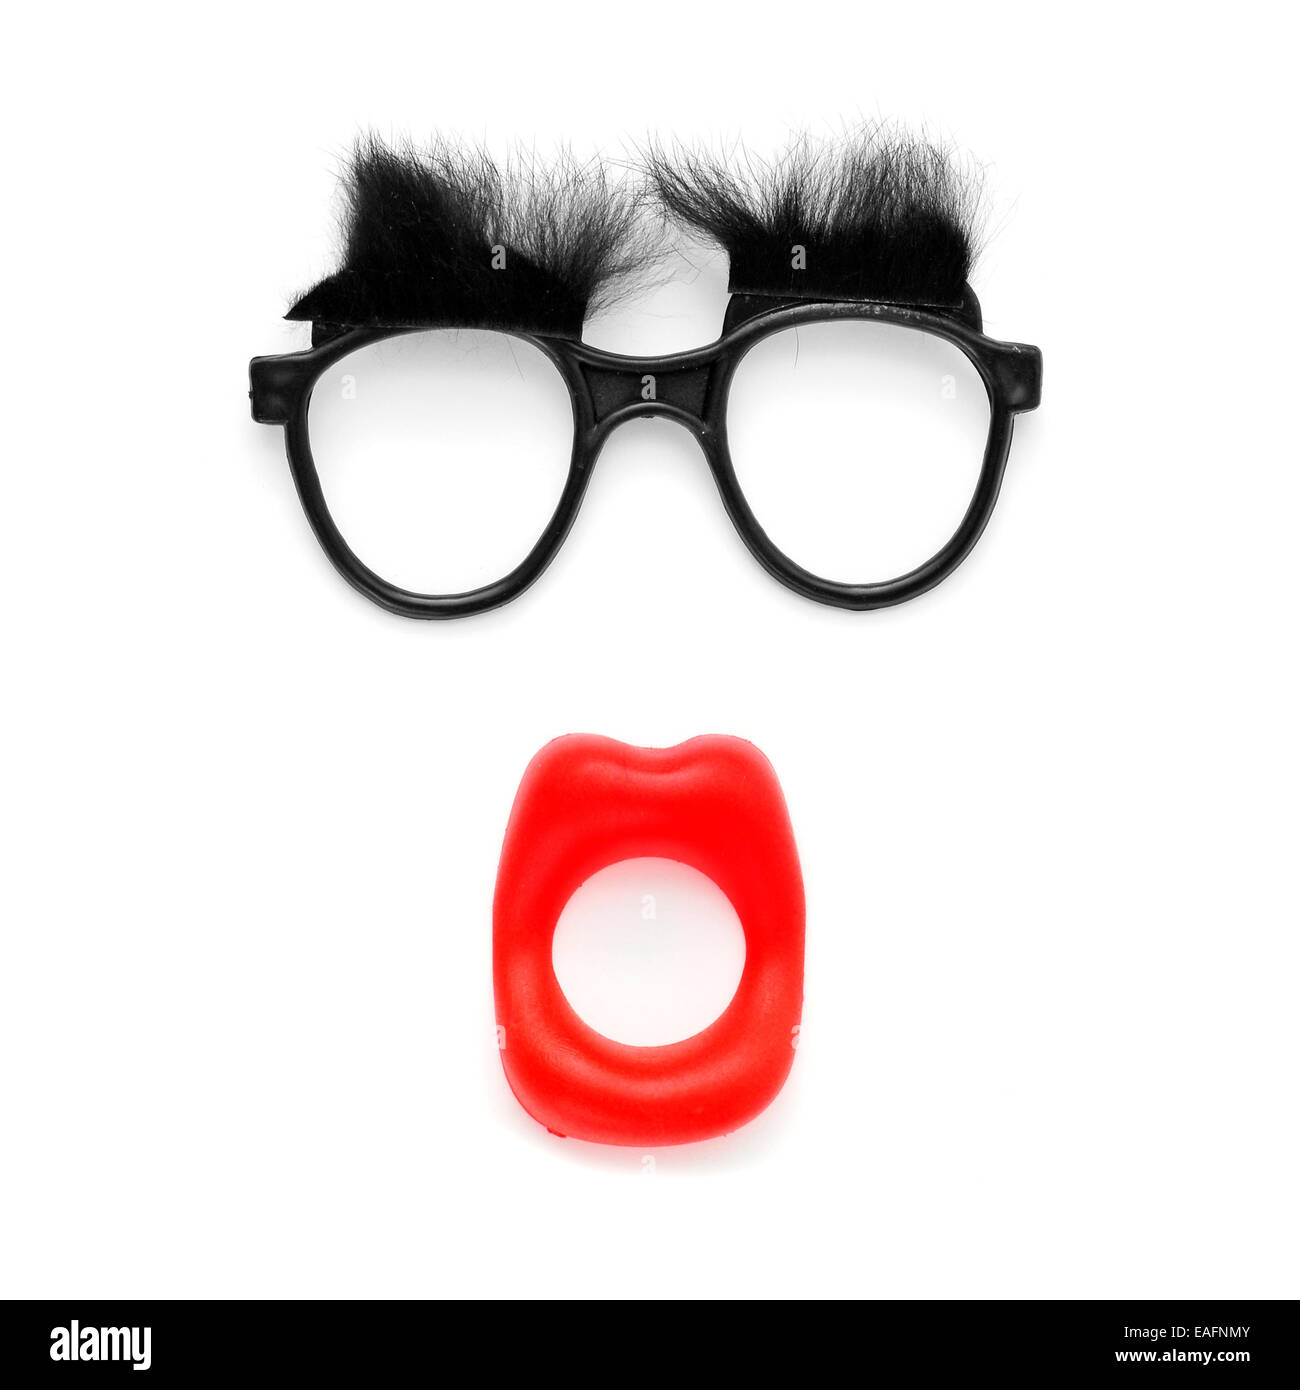 Cara graciosa: fake gafas y cejas y boca abierta sobre un fondo blanco. Foto de stock